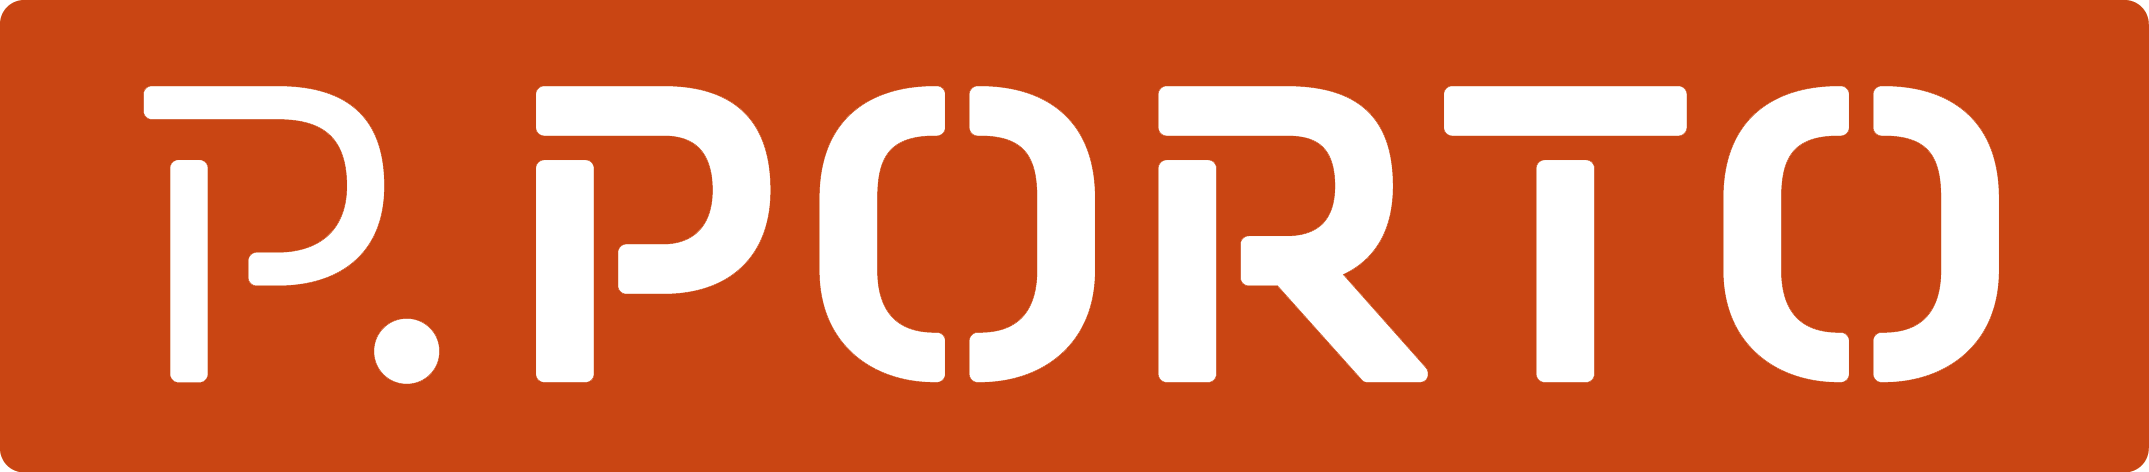 Logo - PPORTO